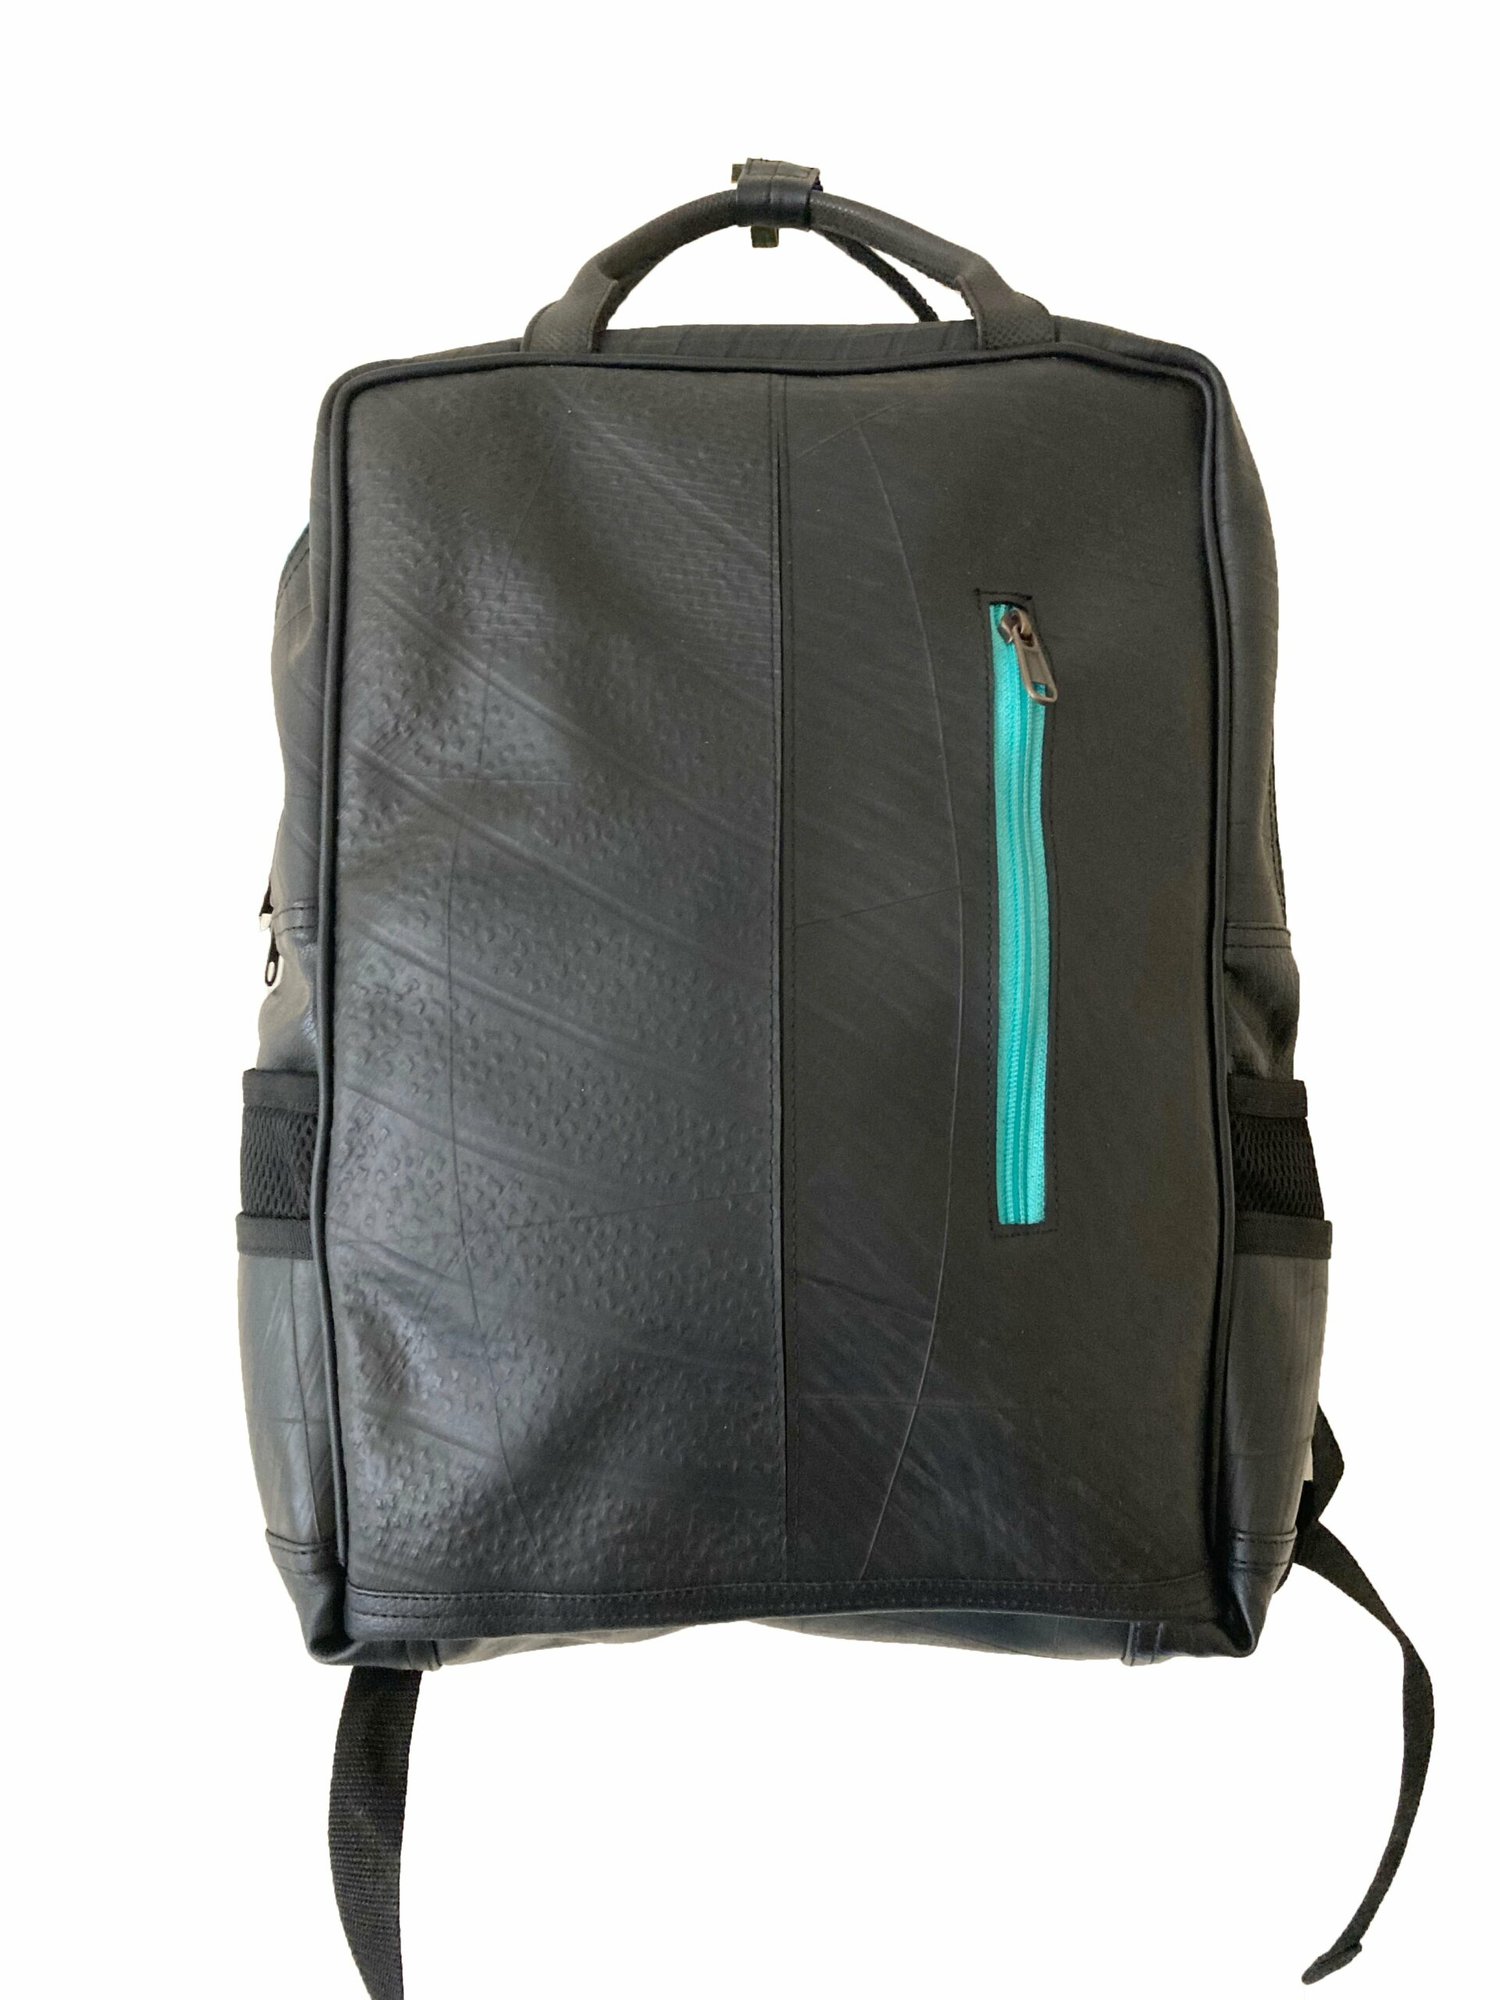 Hackney Backpack - Mint